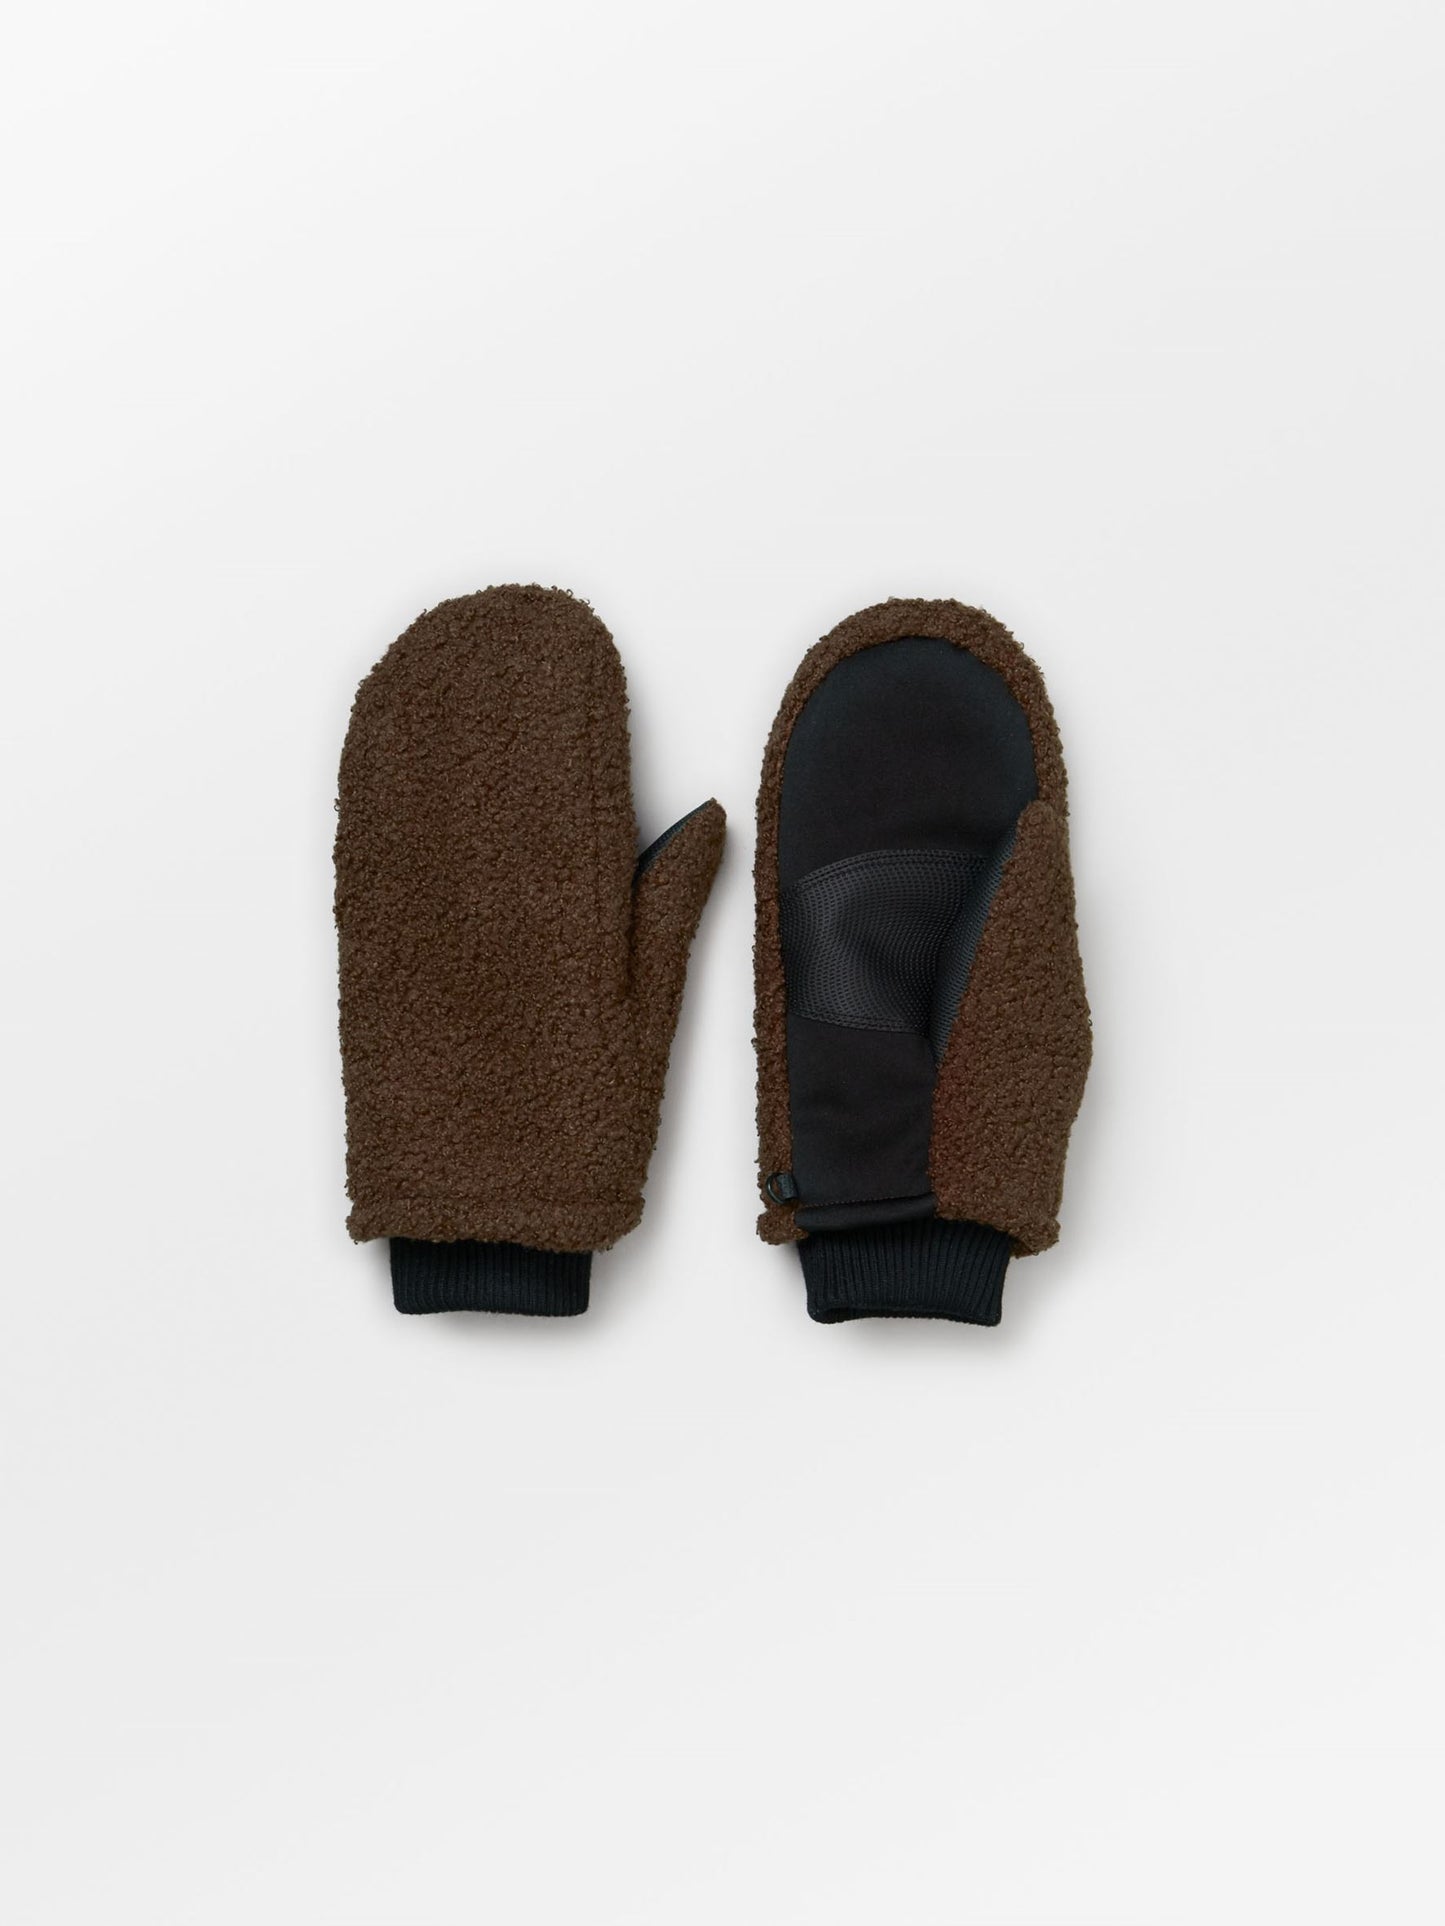 Teddy Bonna Gloves - Hot Fudge Brown Clothing   BeckSöndergaard